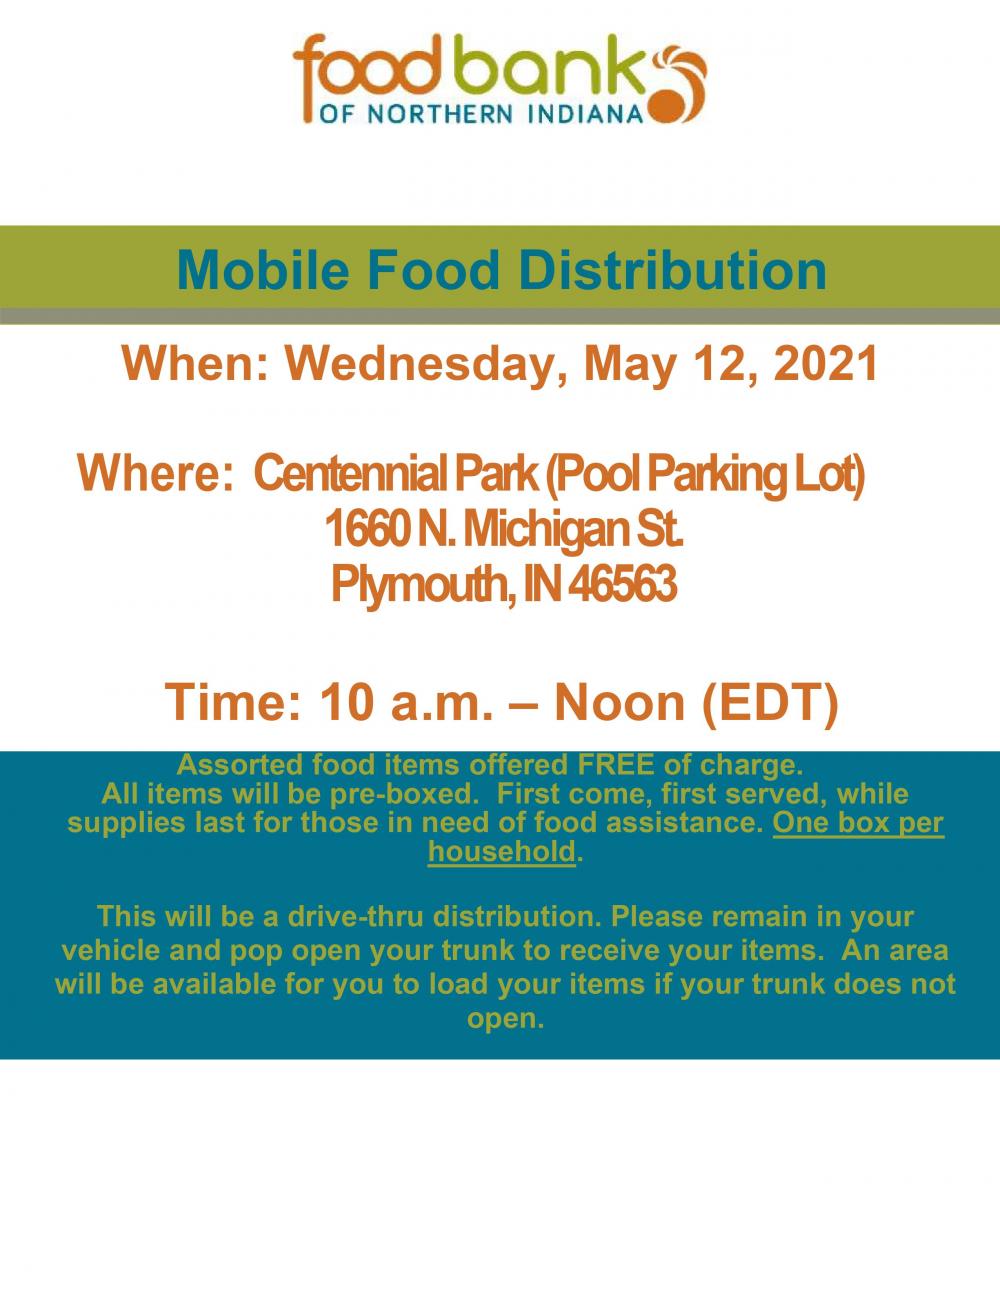 Mobile Food Distribution 5.12